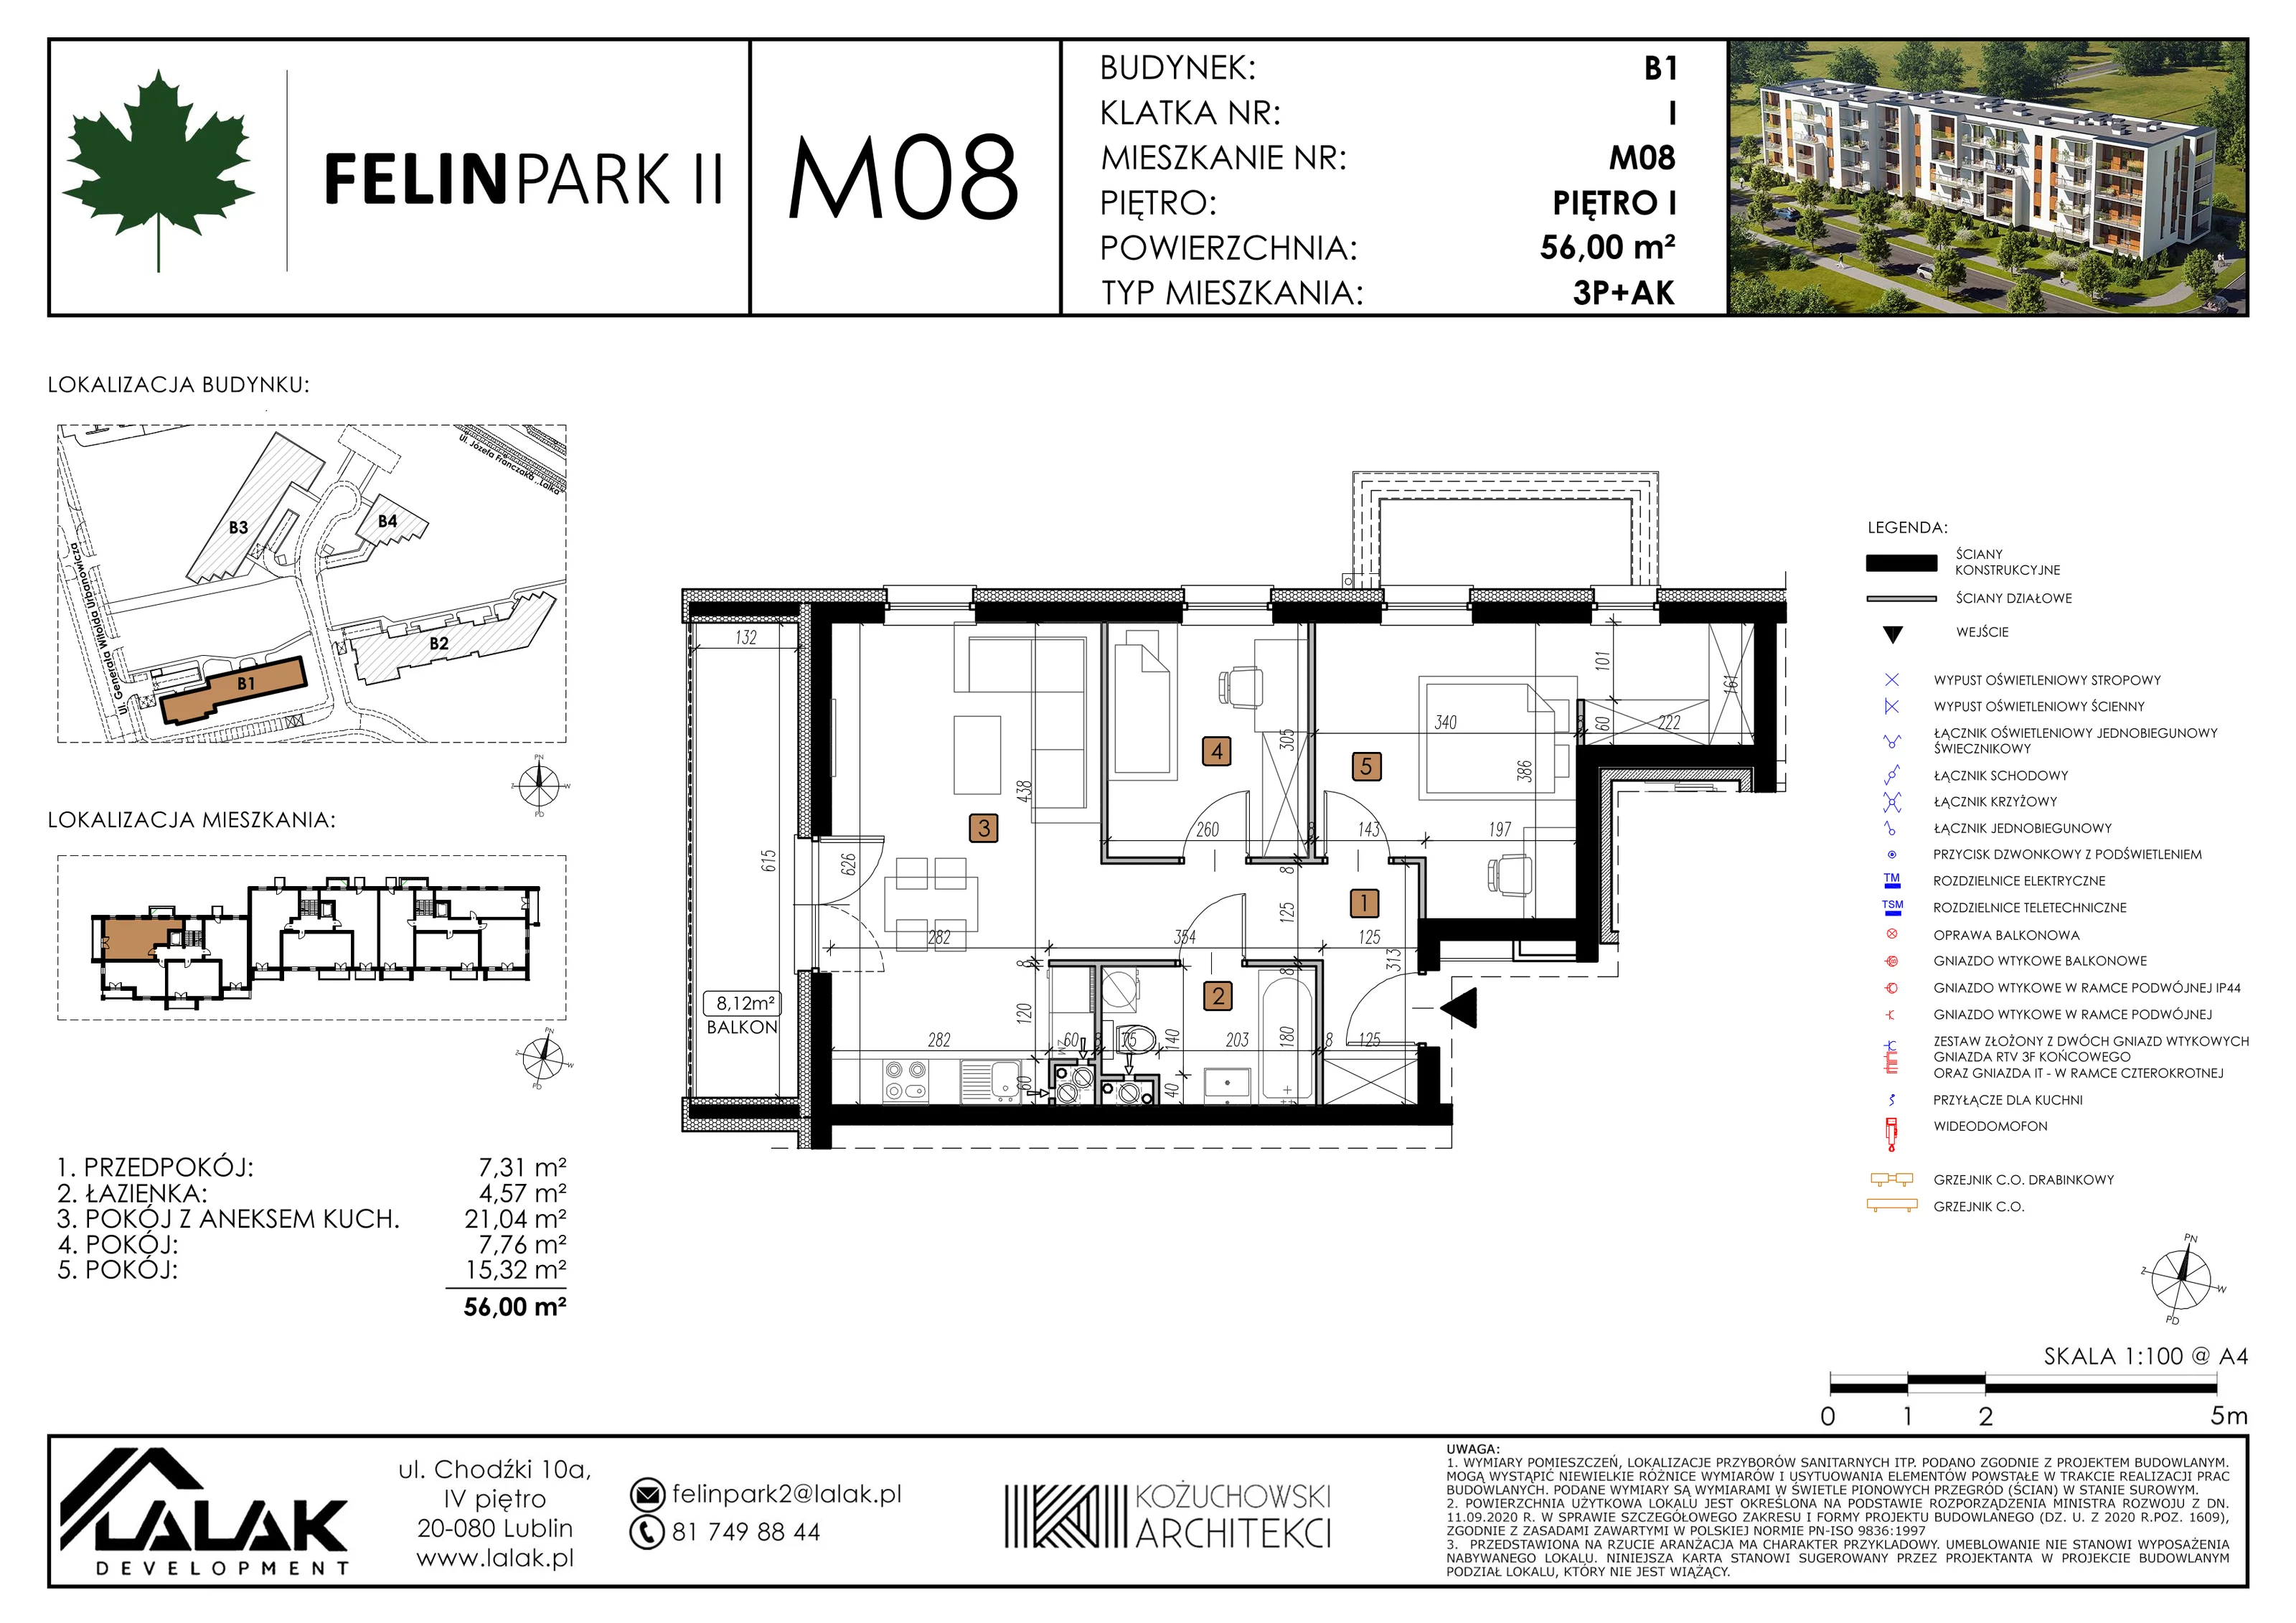 Mieszkanie 56,00 m², piętro 1, oferta nr B1_M8/I, Felin Park II, Lublin, Felin, ul. gen. Stanisława Skalskiego 8-10